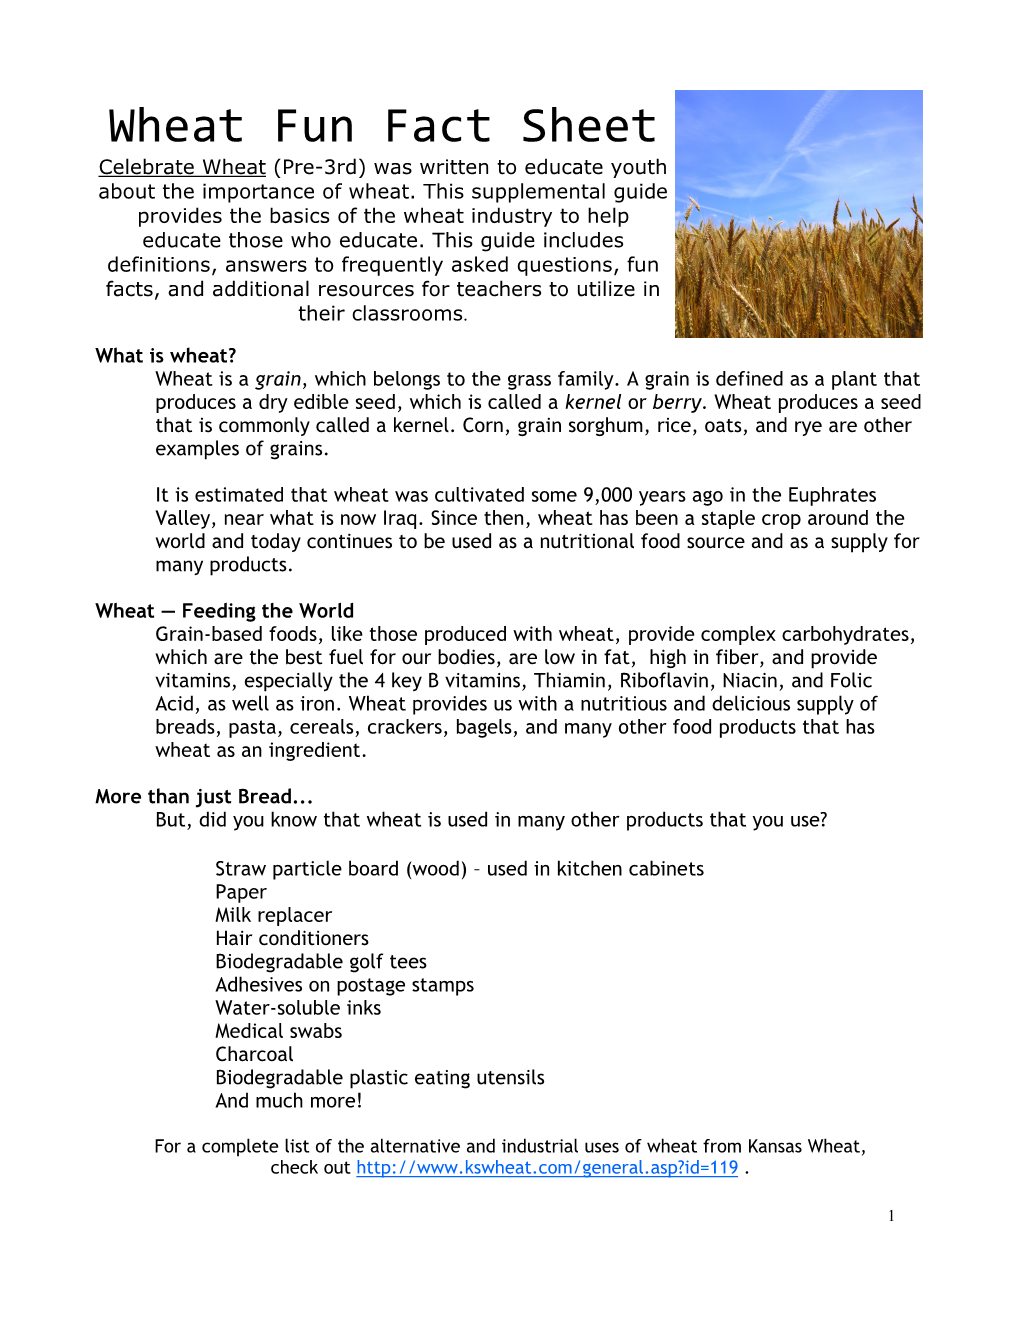 Wheat Fun Fact Guide